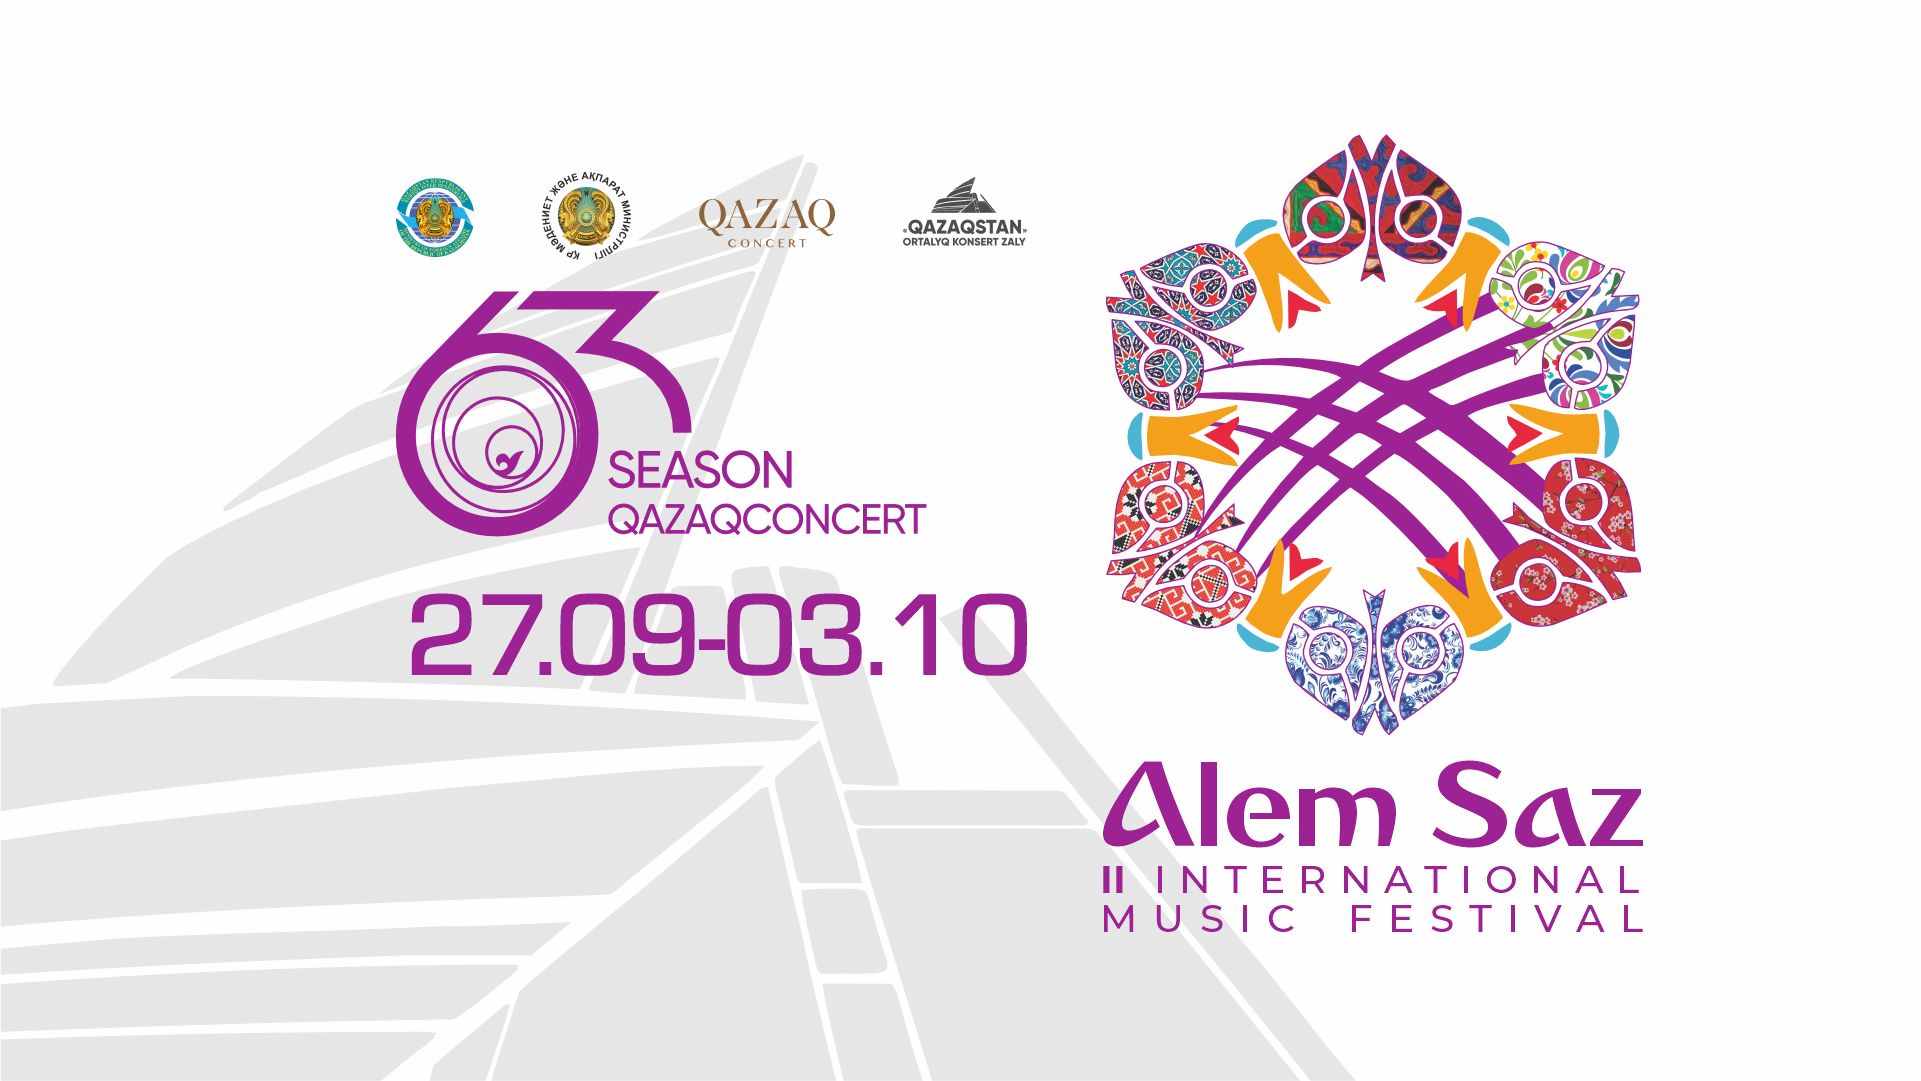 Belgili qazaqstandyq jäne sheteldik muzykanttar «ALEM SAZ» halyqaralyq  festivalinde öner körsetedi